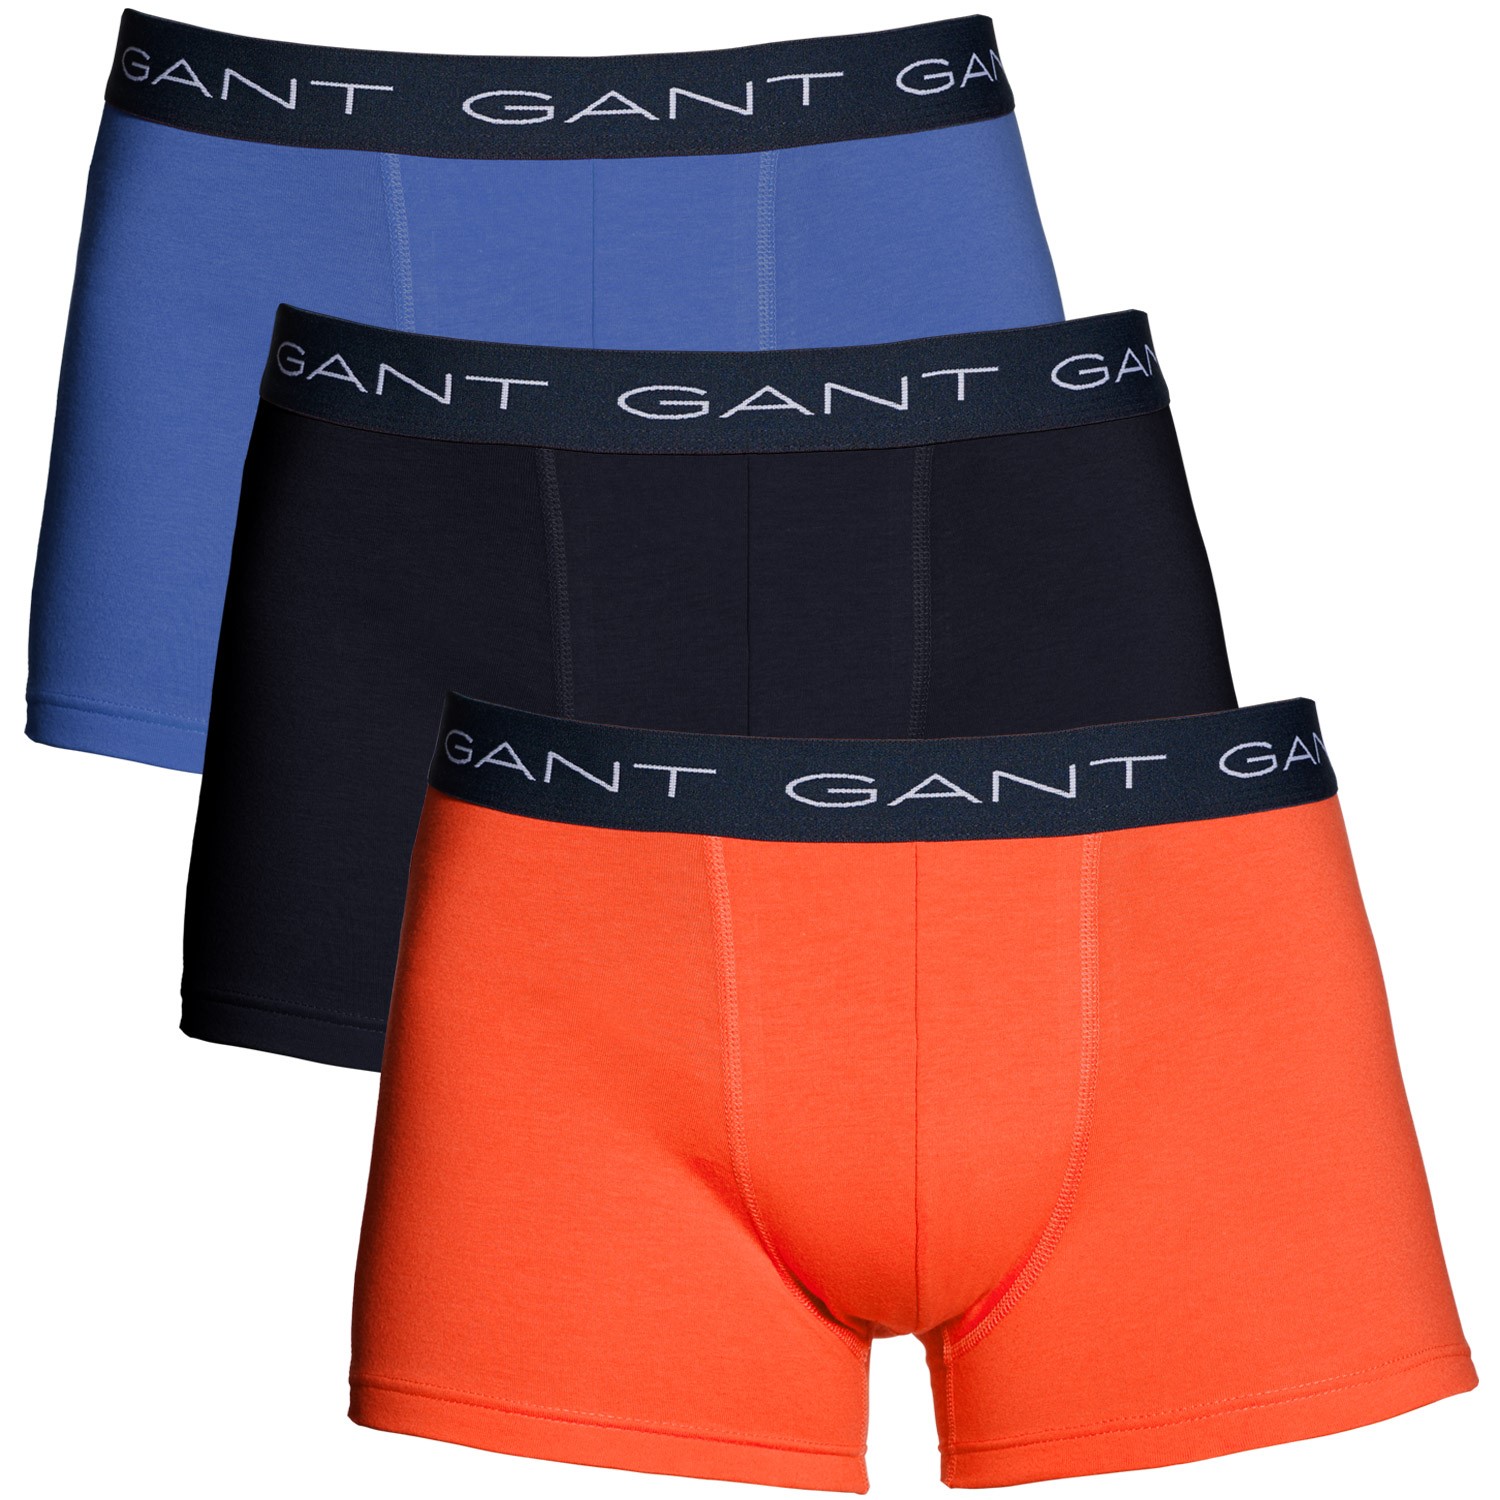 Gant Essential Trunk Seasonal